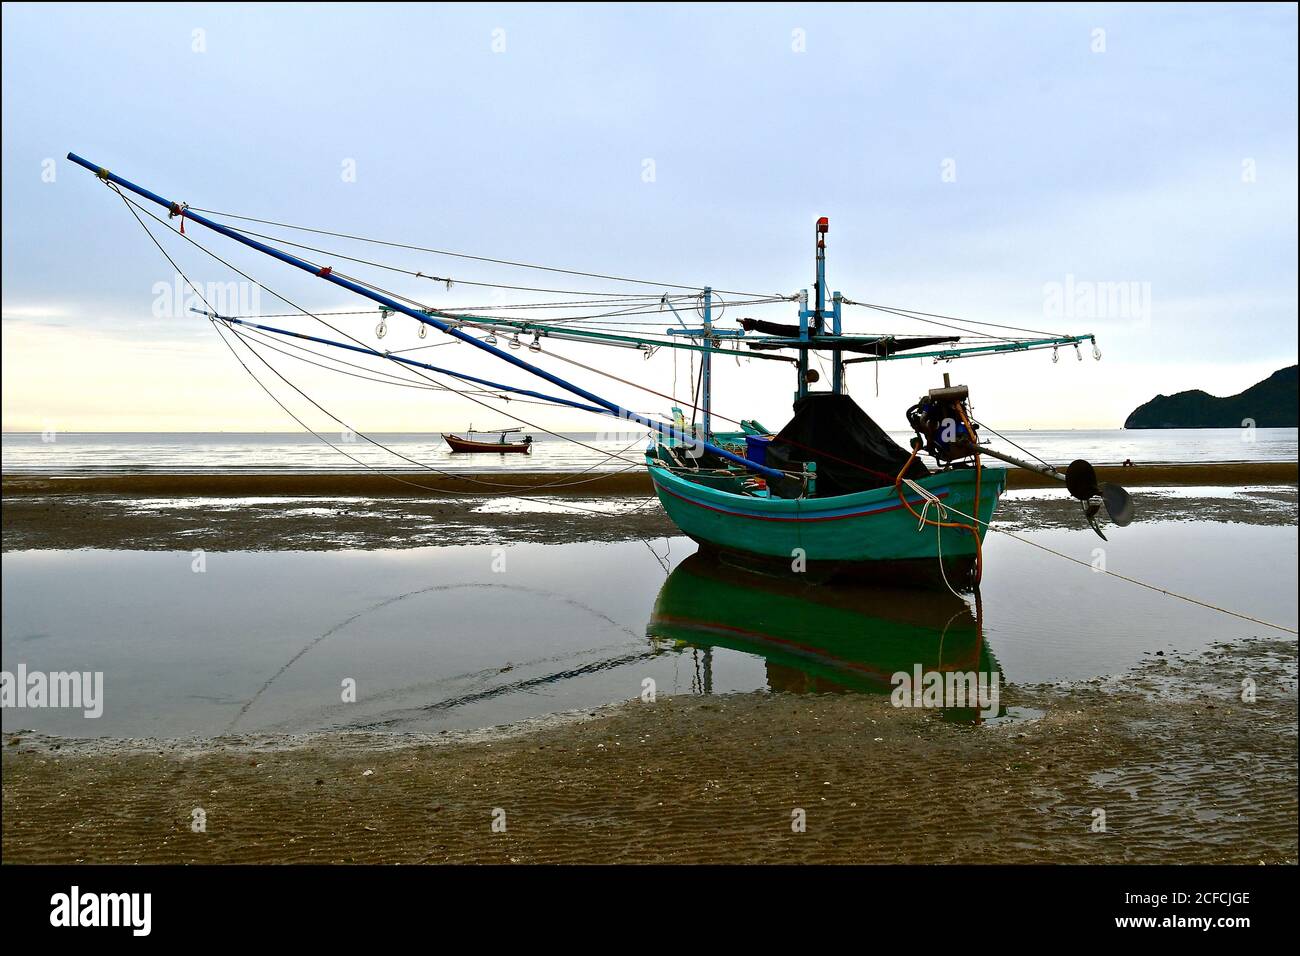 Un bateau de pêche asiatique traditionnel en bois avec grillage amarré à marée basse, il y a un miroir dans l'eau calme. Banque D'Images